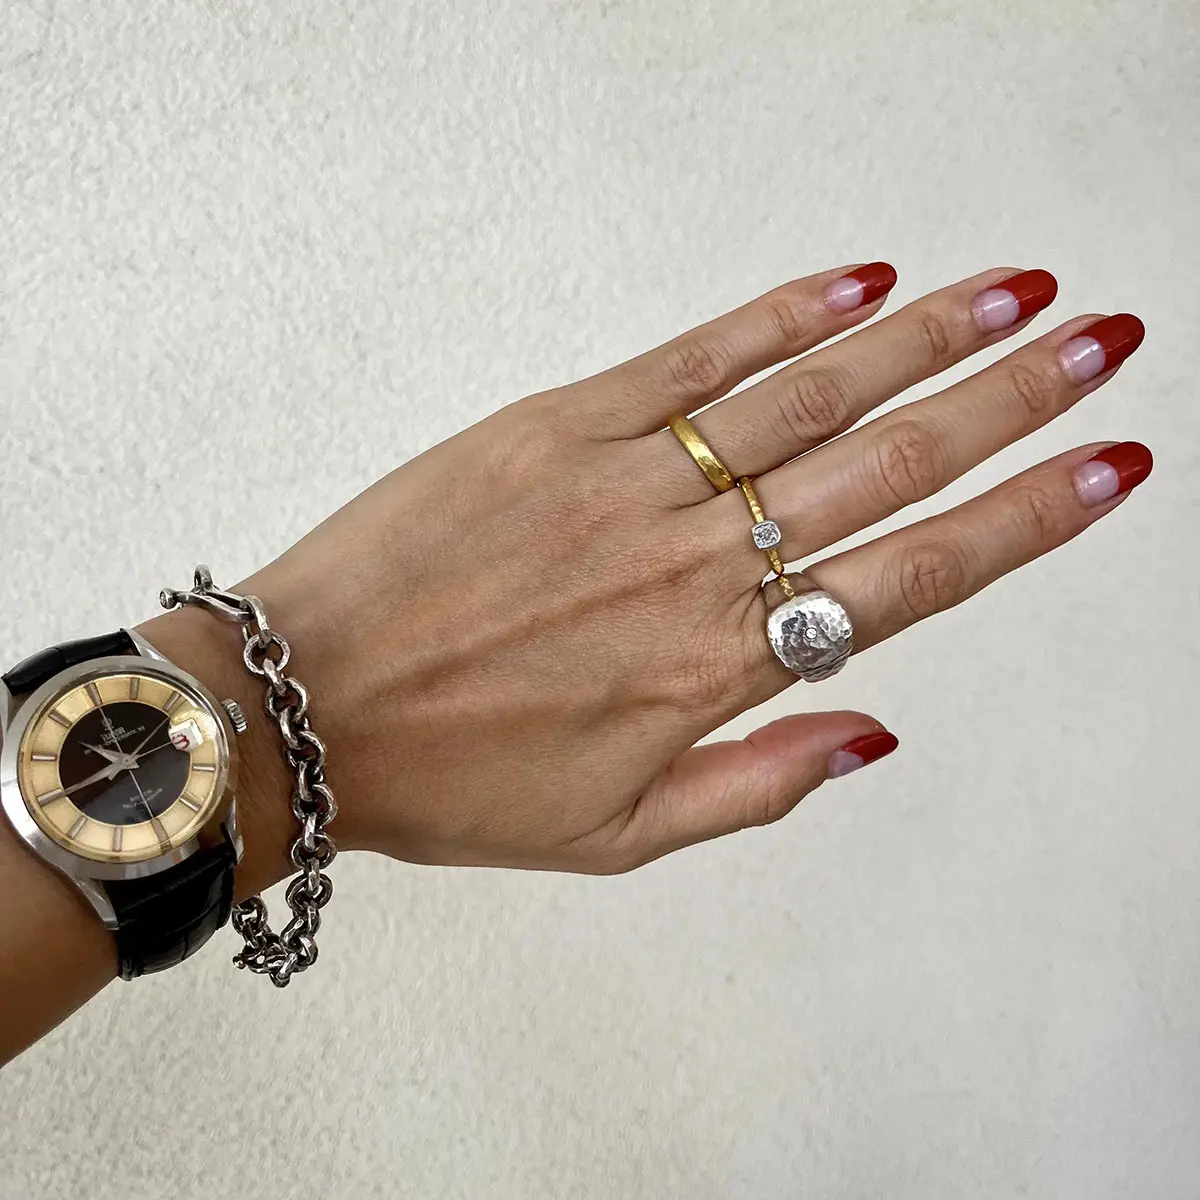 お気に入りのマルコム ベッツのジュエリーとチューダーの時計を身につけたファッションエディター三尋木奈保さん